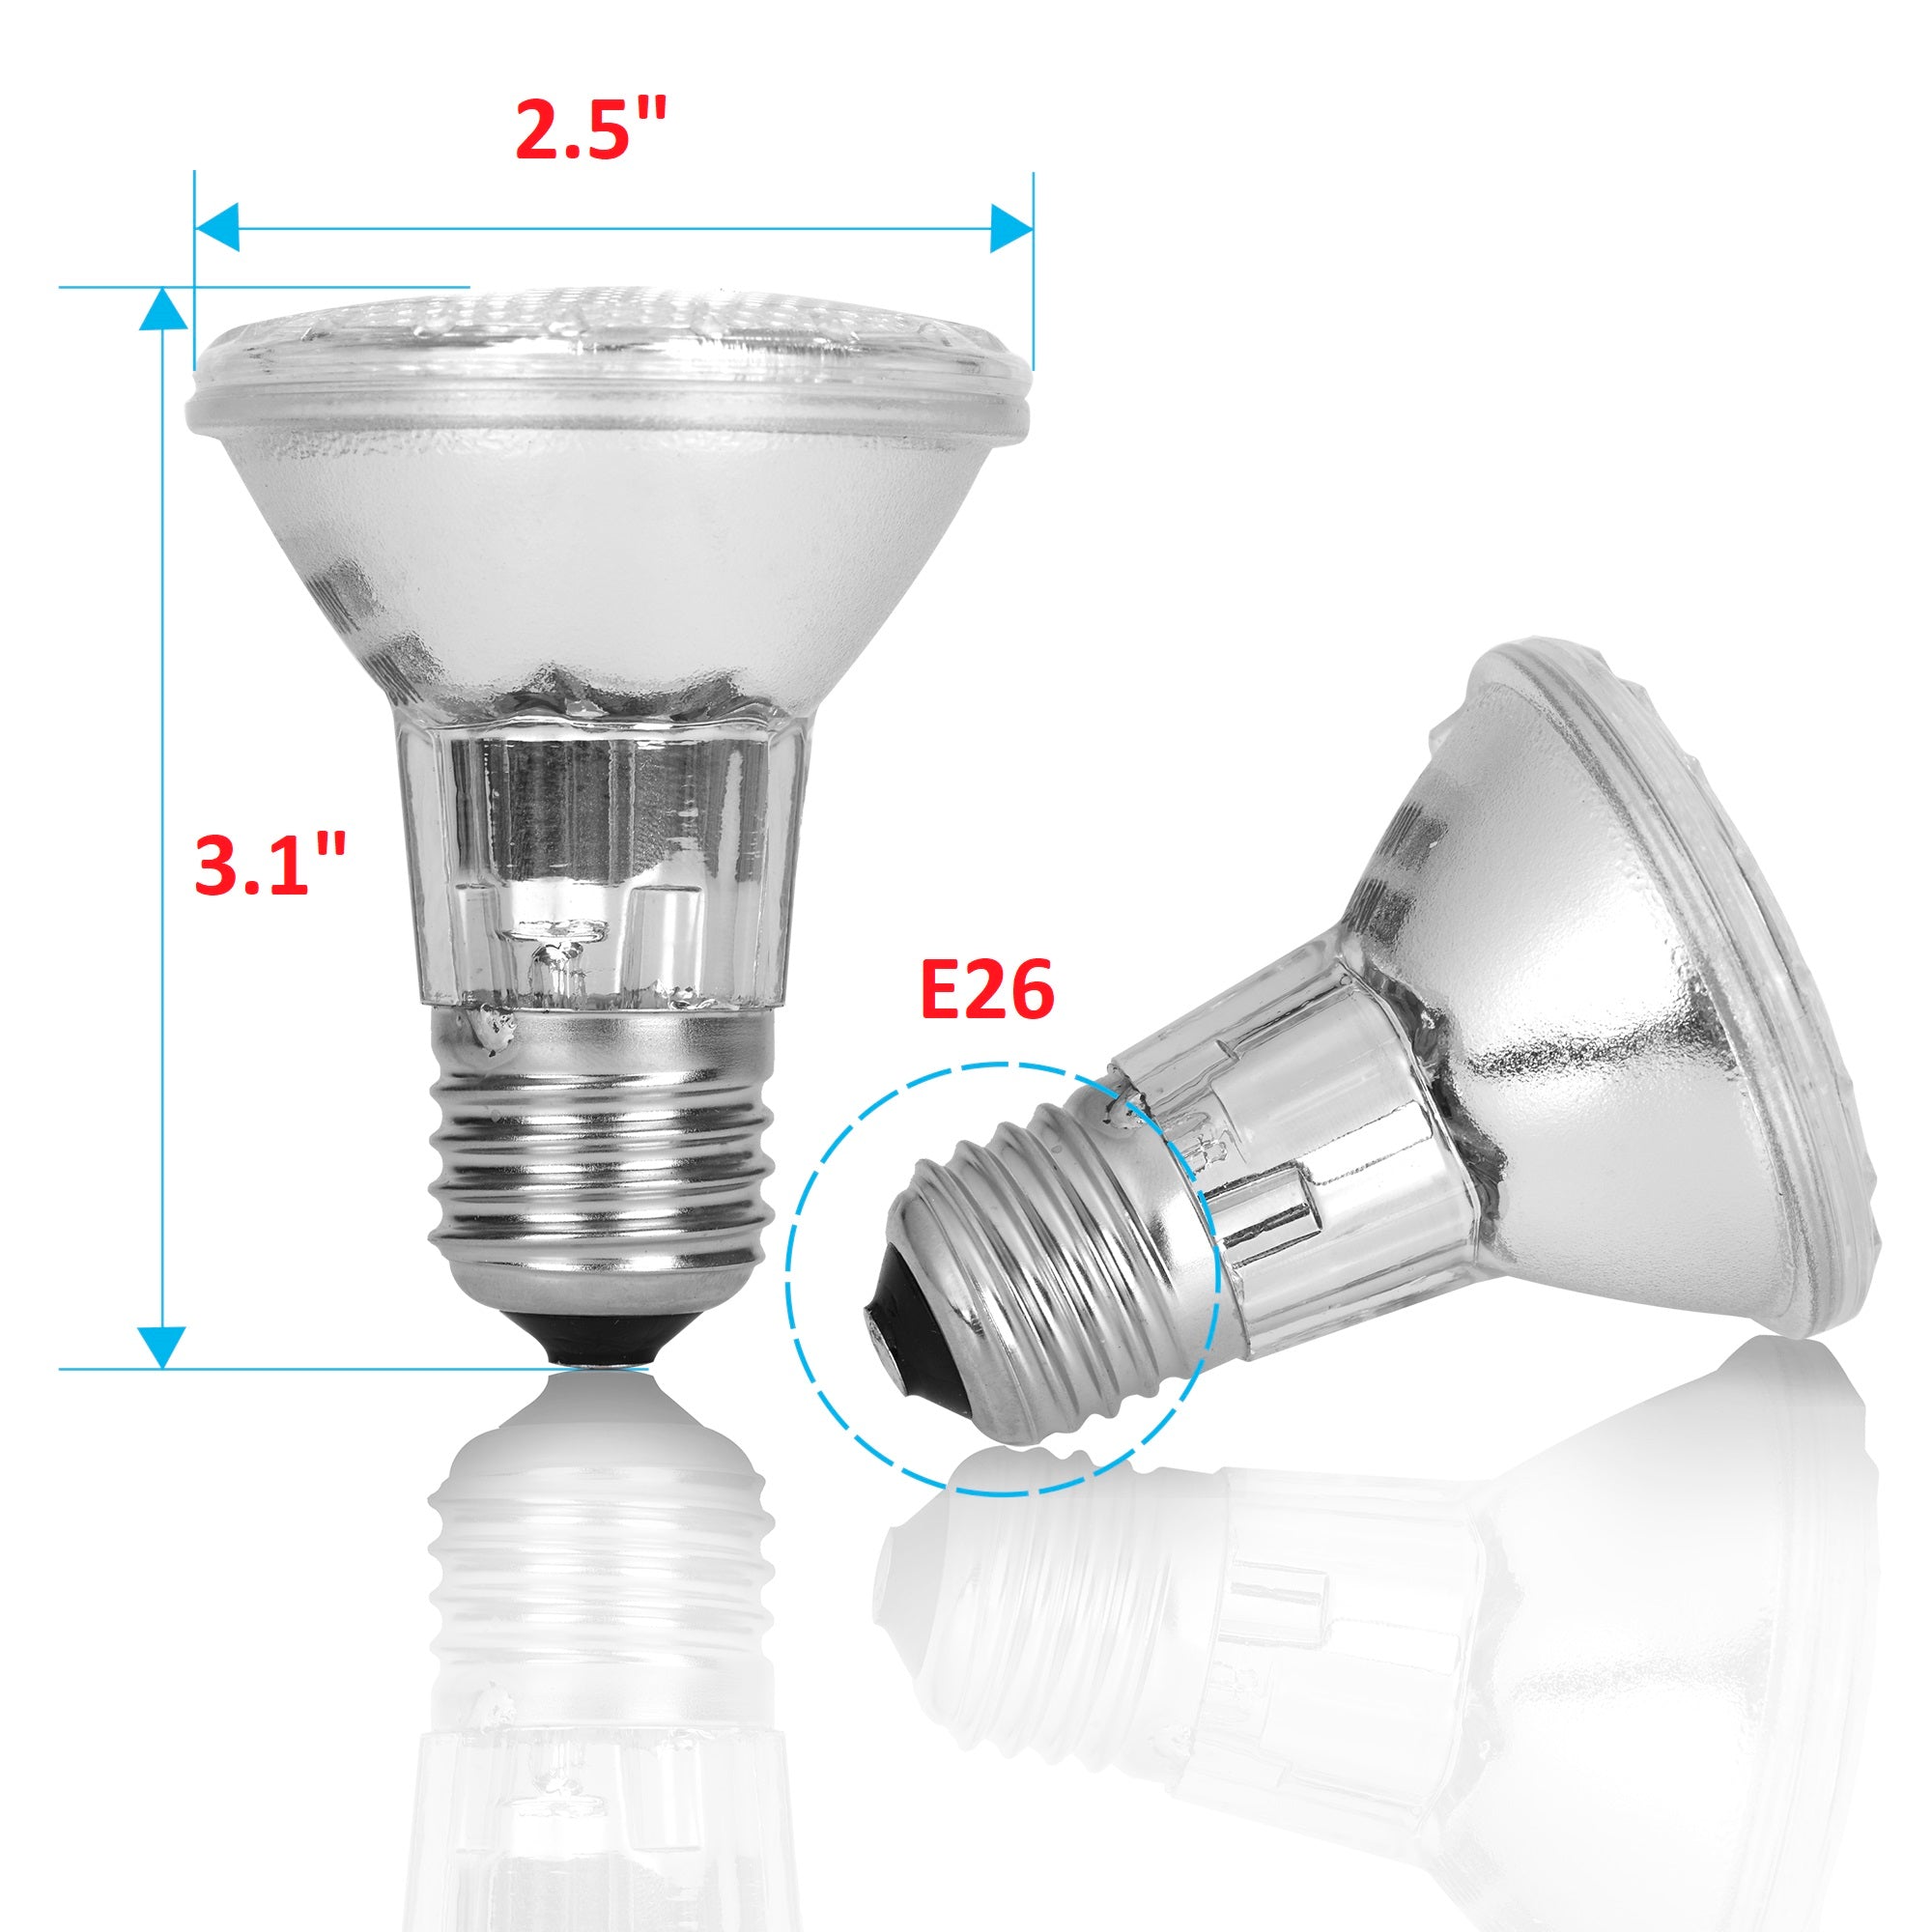 PAR20 halogen light bulb - Value 3 6 15 